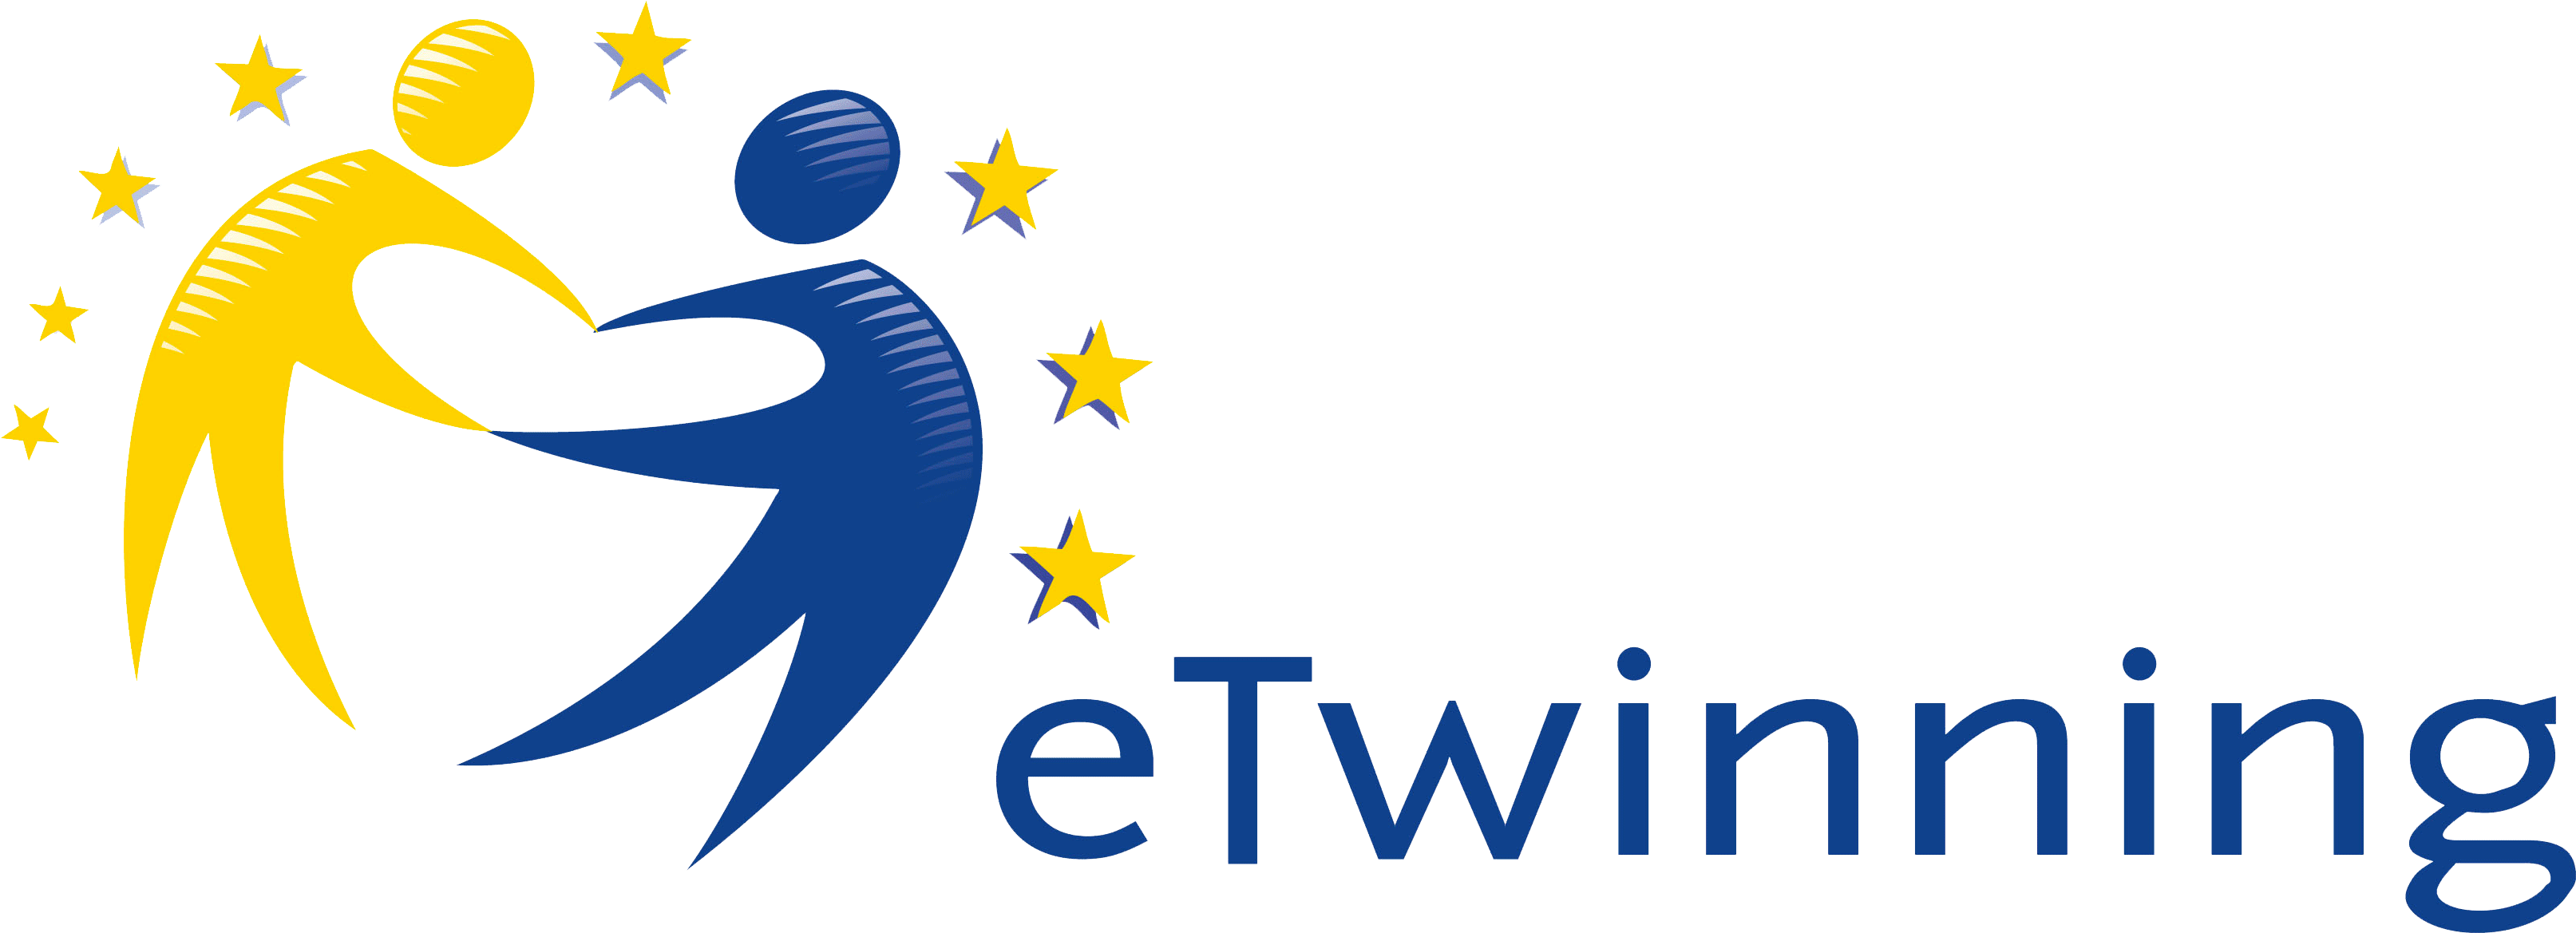 etwinning logo 5da35